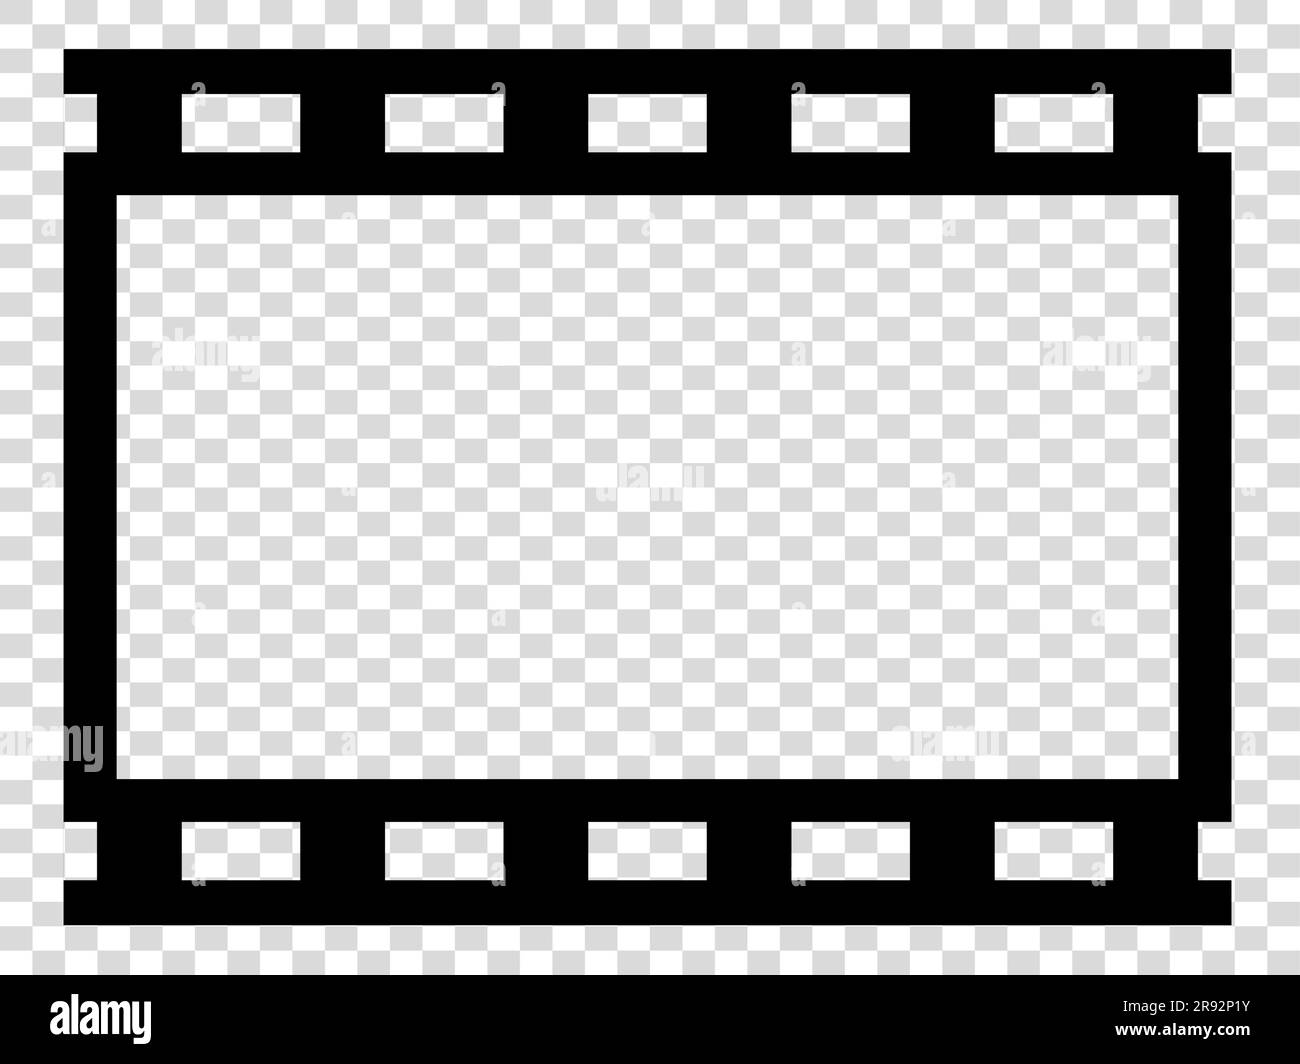 Modello cornice pellicola fotografica illustrazione vettoriale isolata su  sfondo bianco Immagine e Vettoriale - Alamy